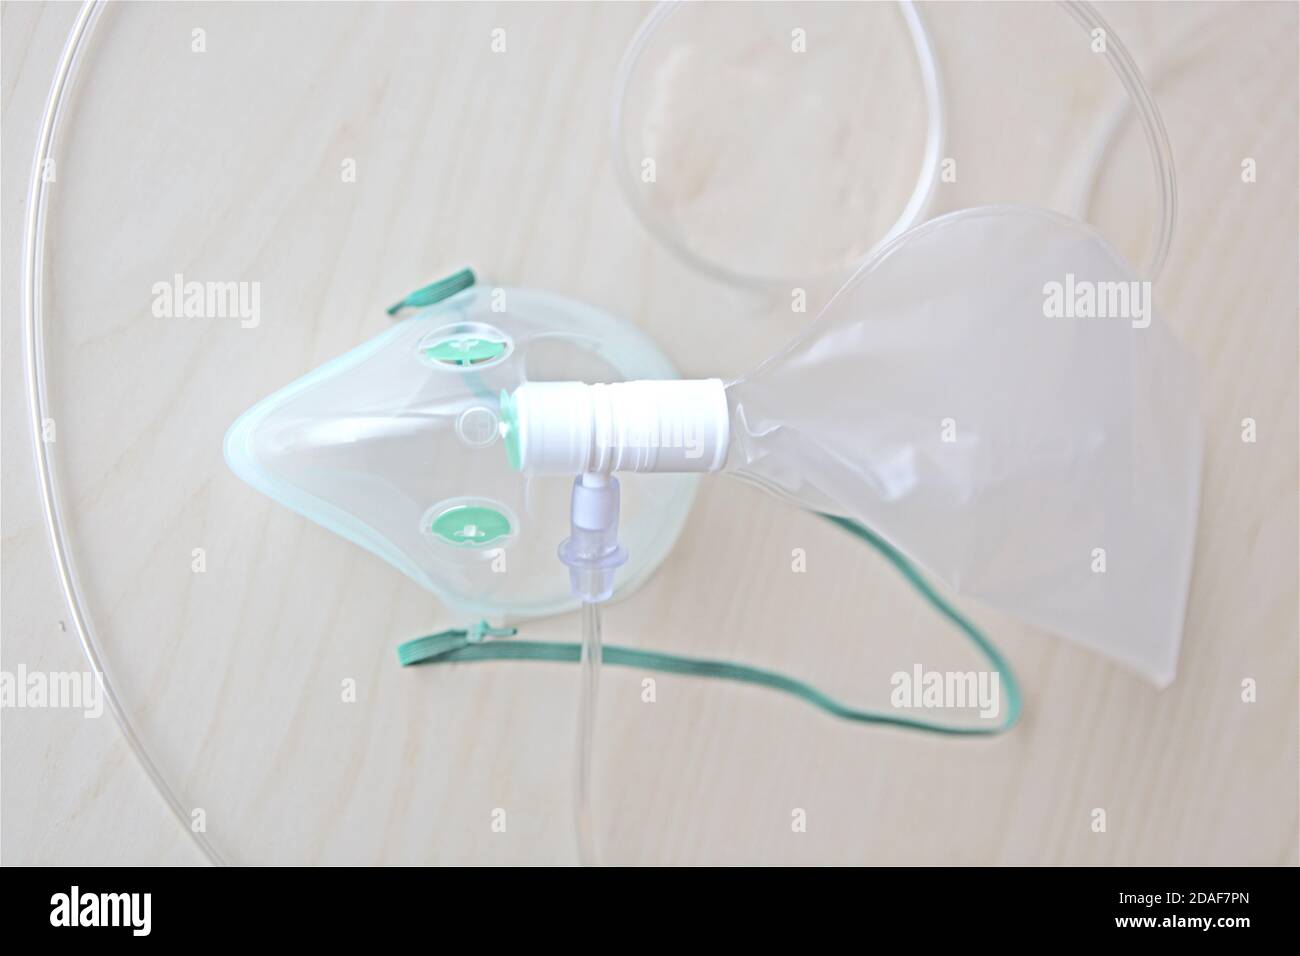 Maschera di ossigeno isolata per la cura della covid apparecchiature mediche per la respirazione supporto all'ospedale su tavolo di legno Foto Stock